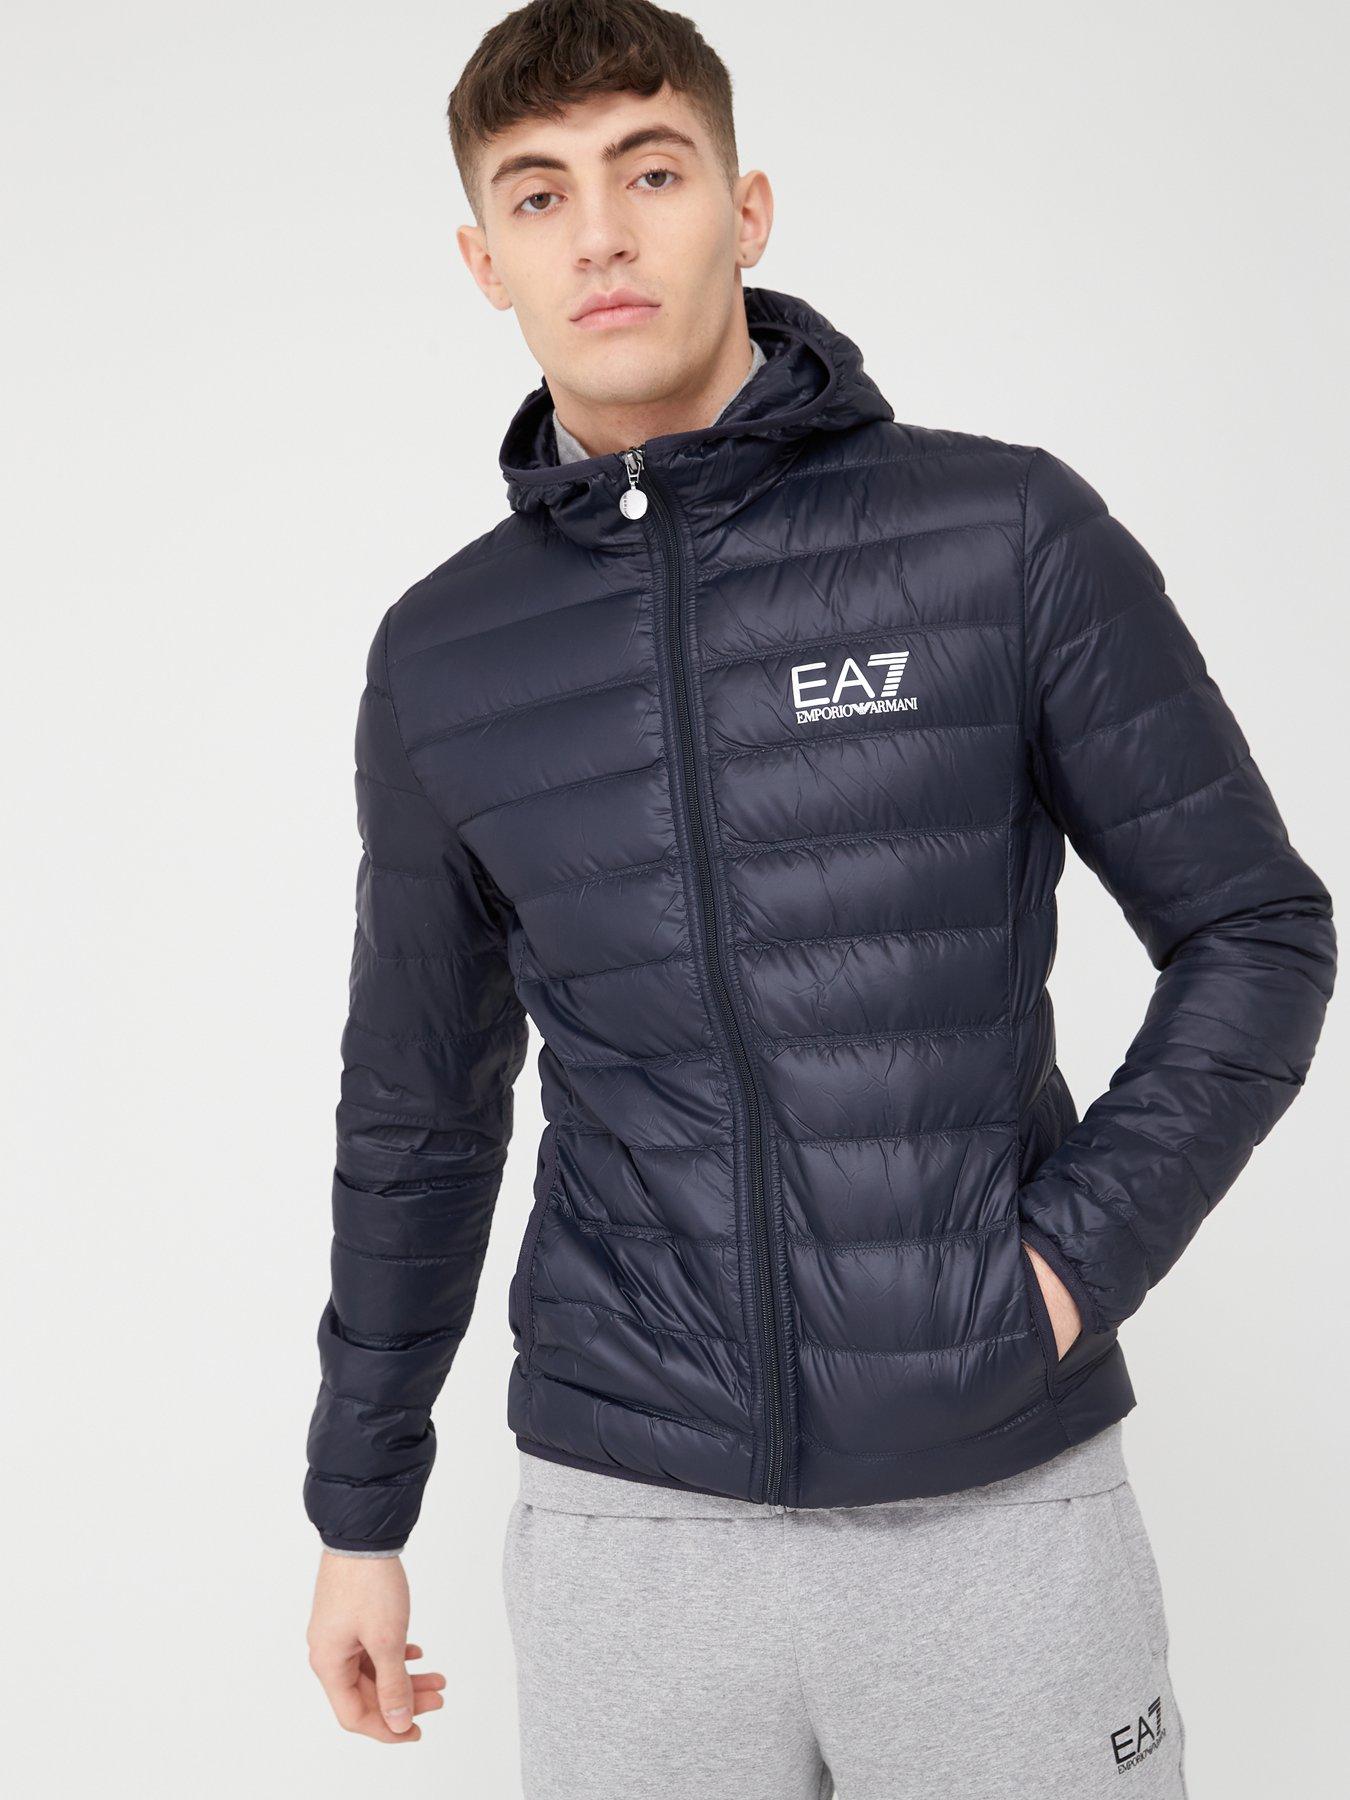 ea7 mens jacket